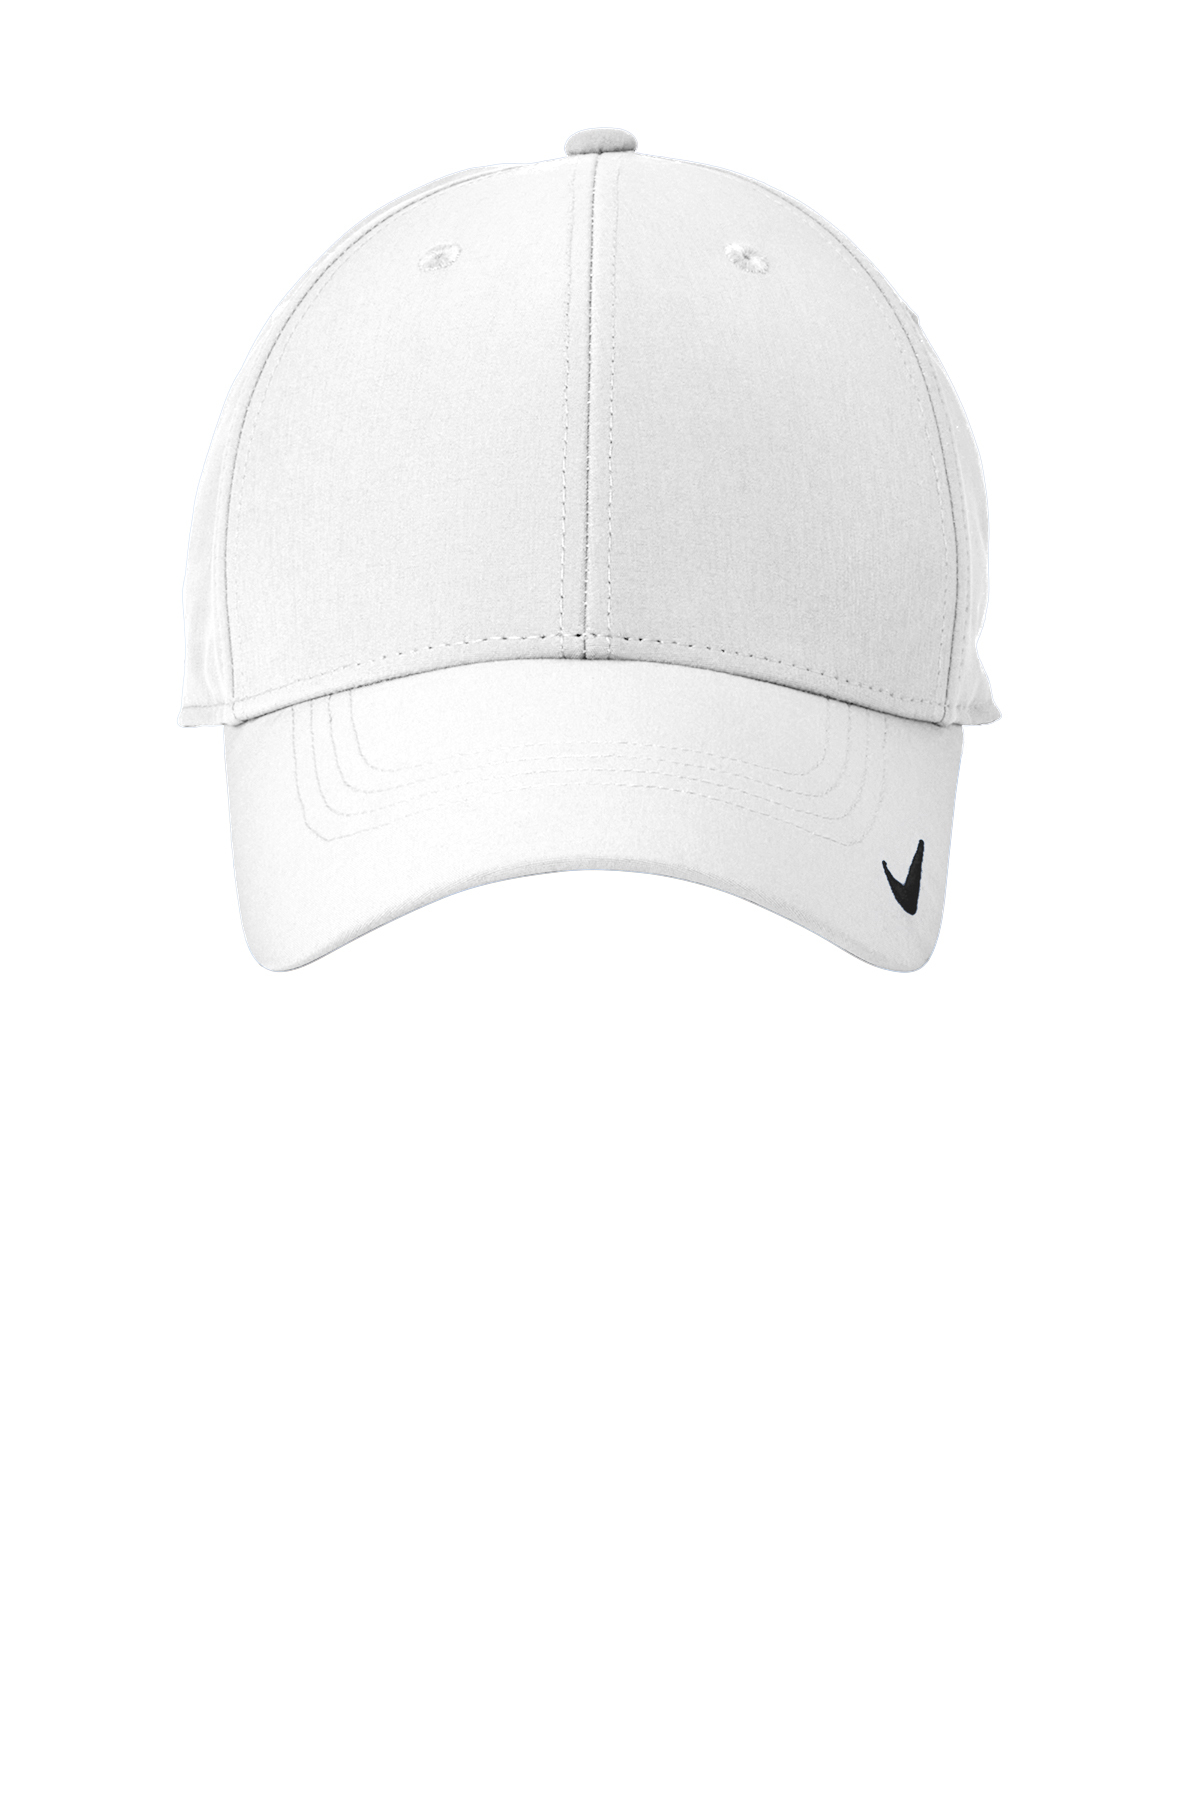 Nike Dri-FIT Legacy Cap | Product | SanMar